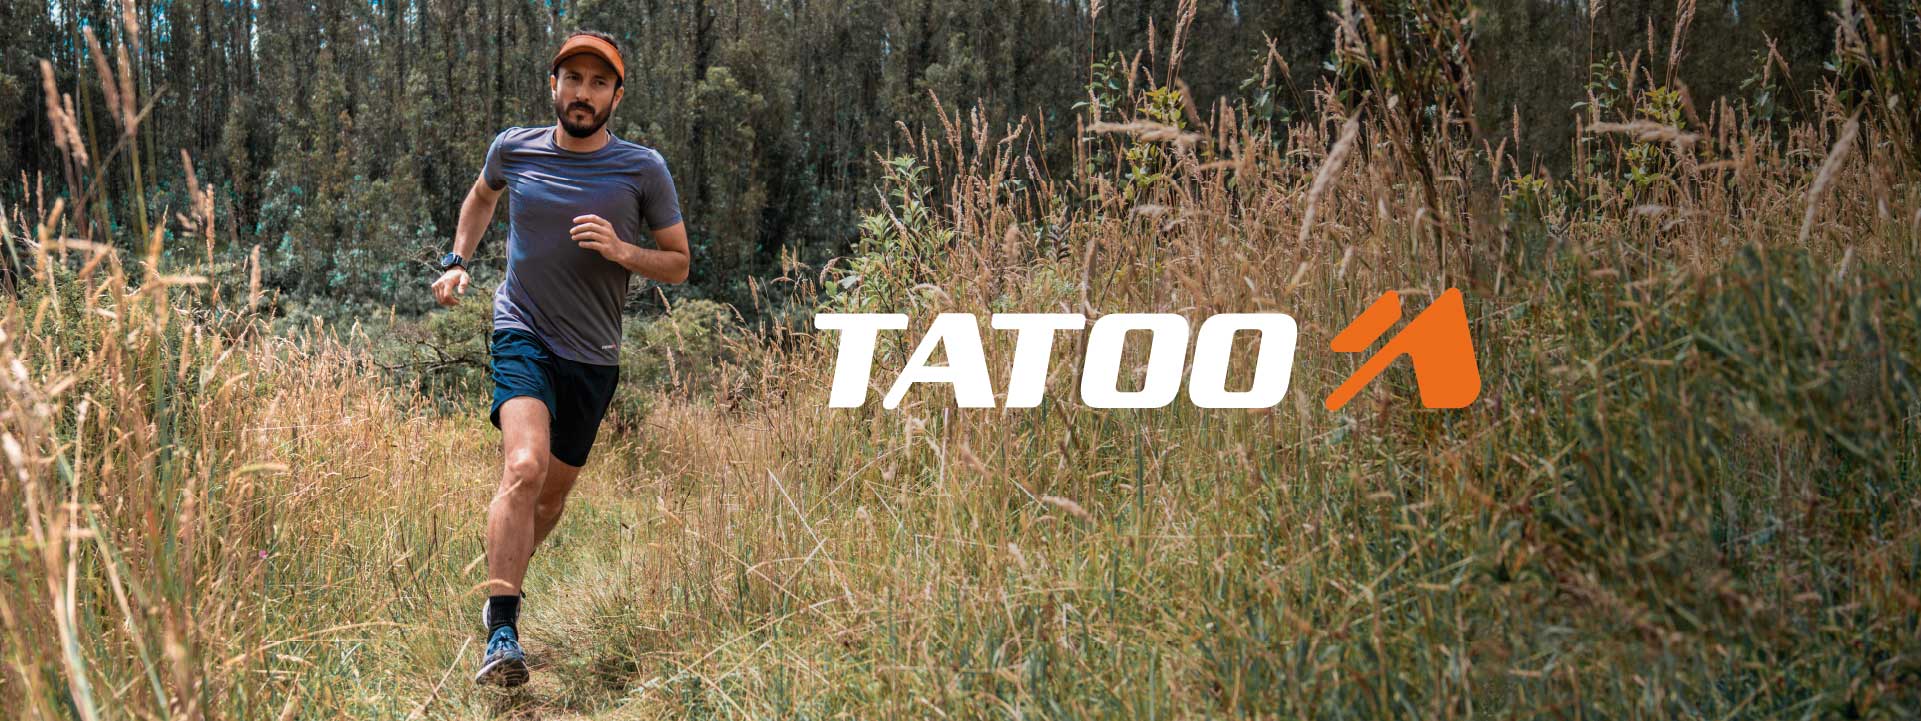 Tatoo es una marca ecuatoriana que produce ropa y equipo para deportes outdoor.